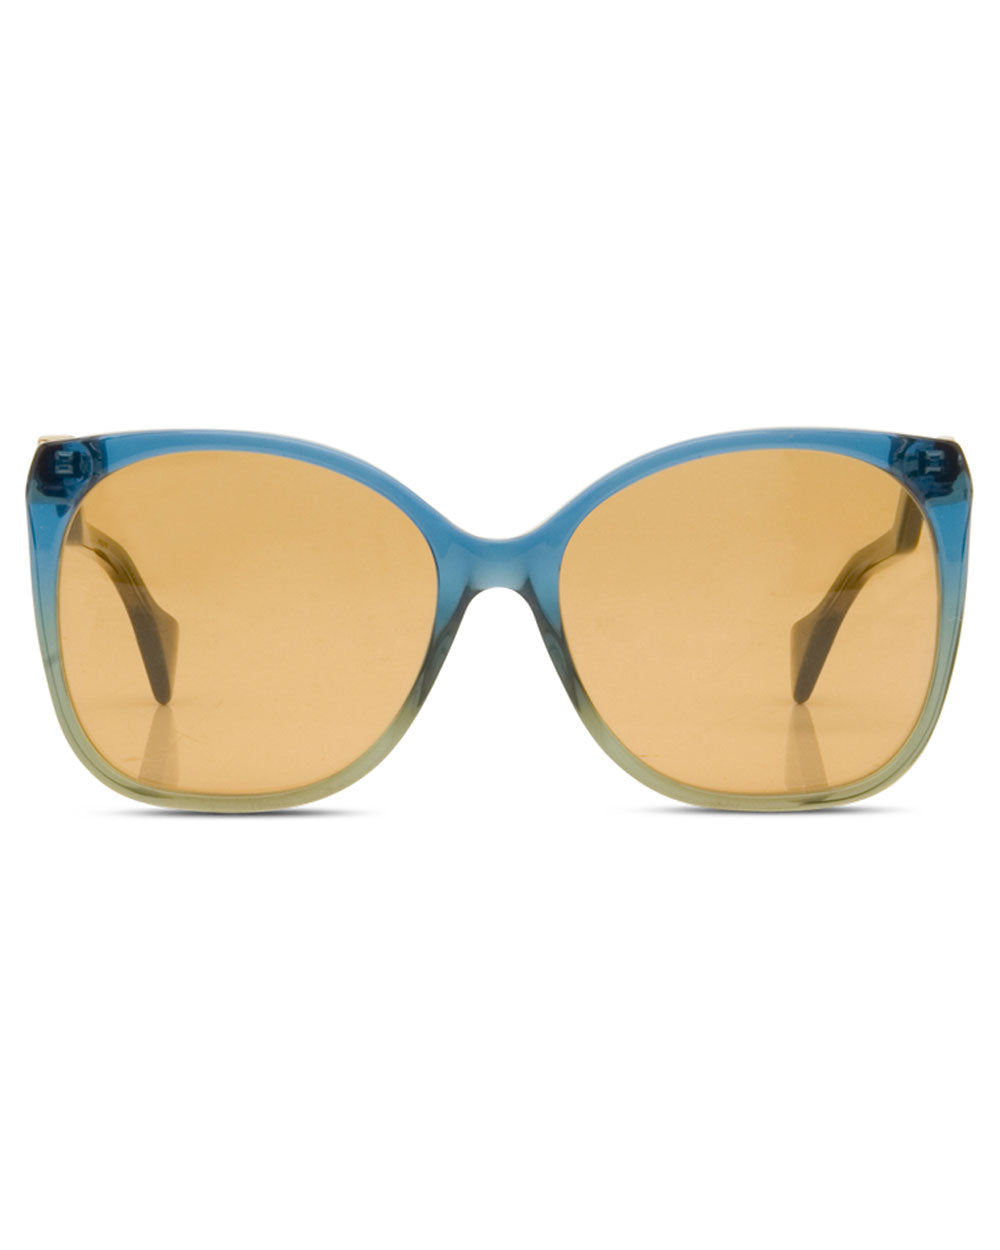 Blue Ombre Sunglasses